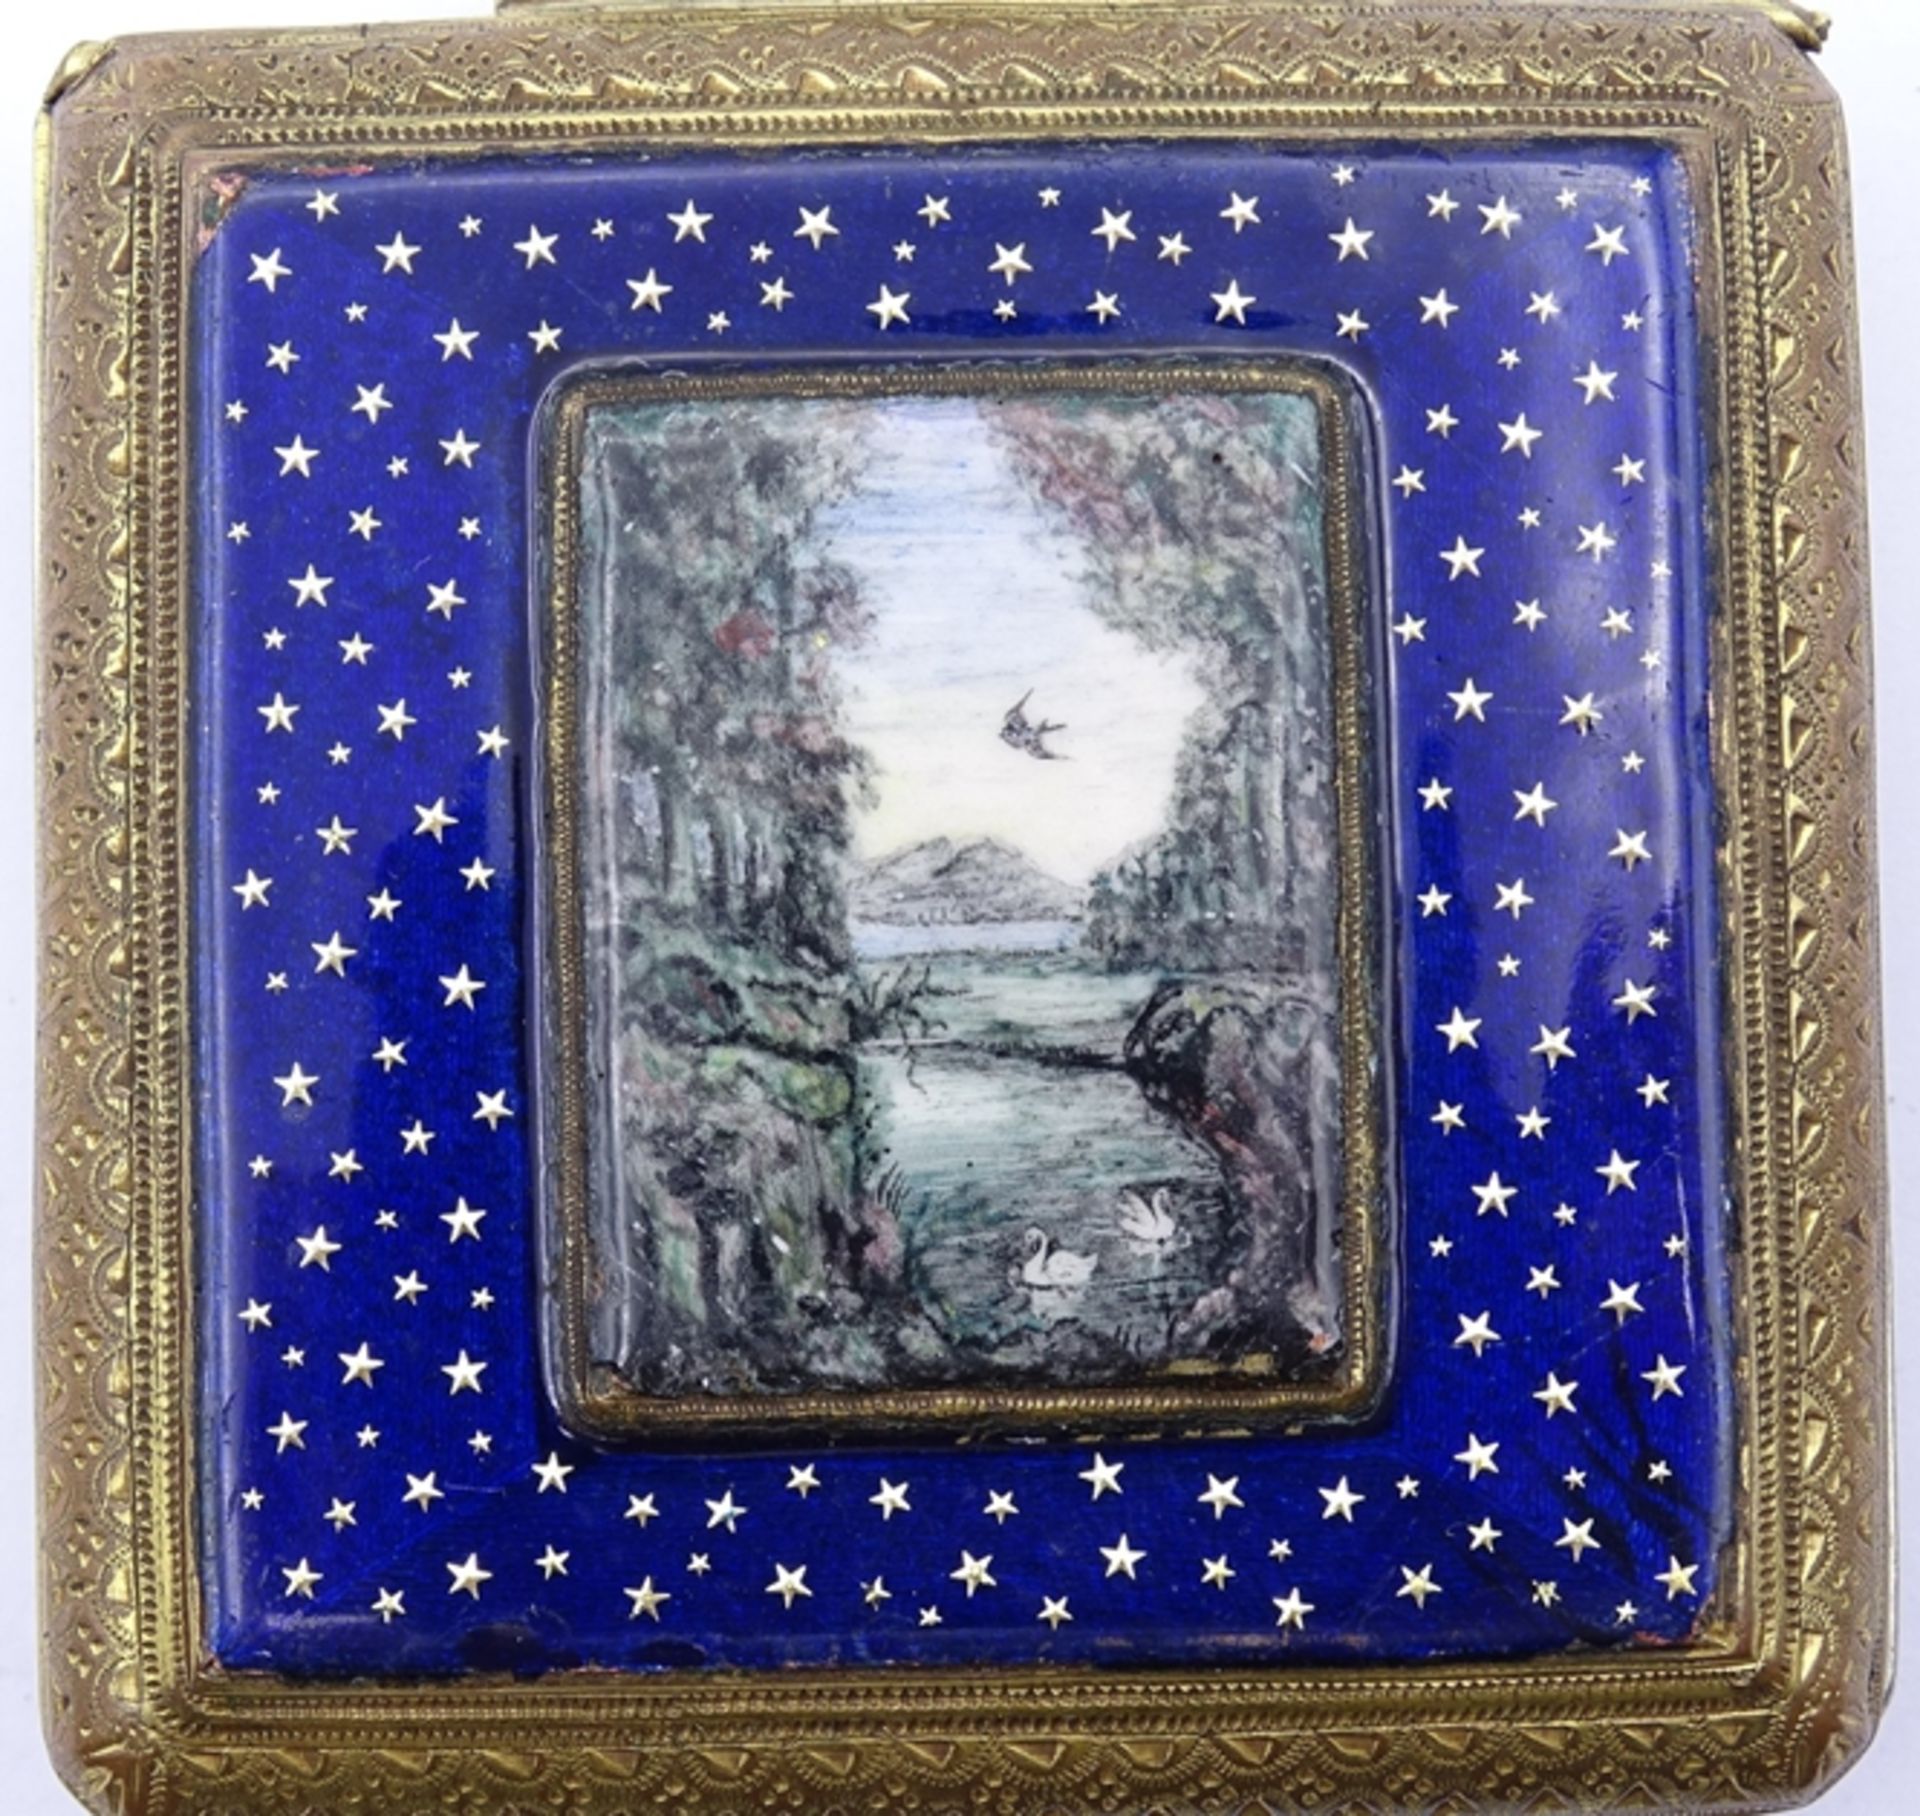 Alte große eckige Taschenuhr mit Emaille Malerei auf Rückendeckel, Sternenbild und Seeansicht, mech - Bild 4 aus 8